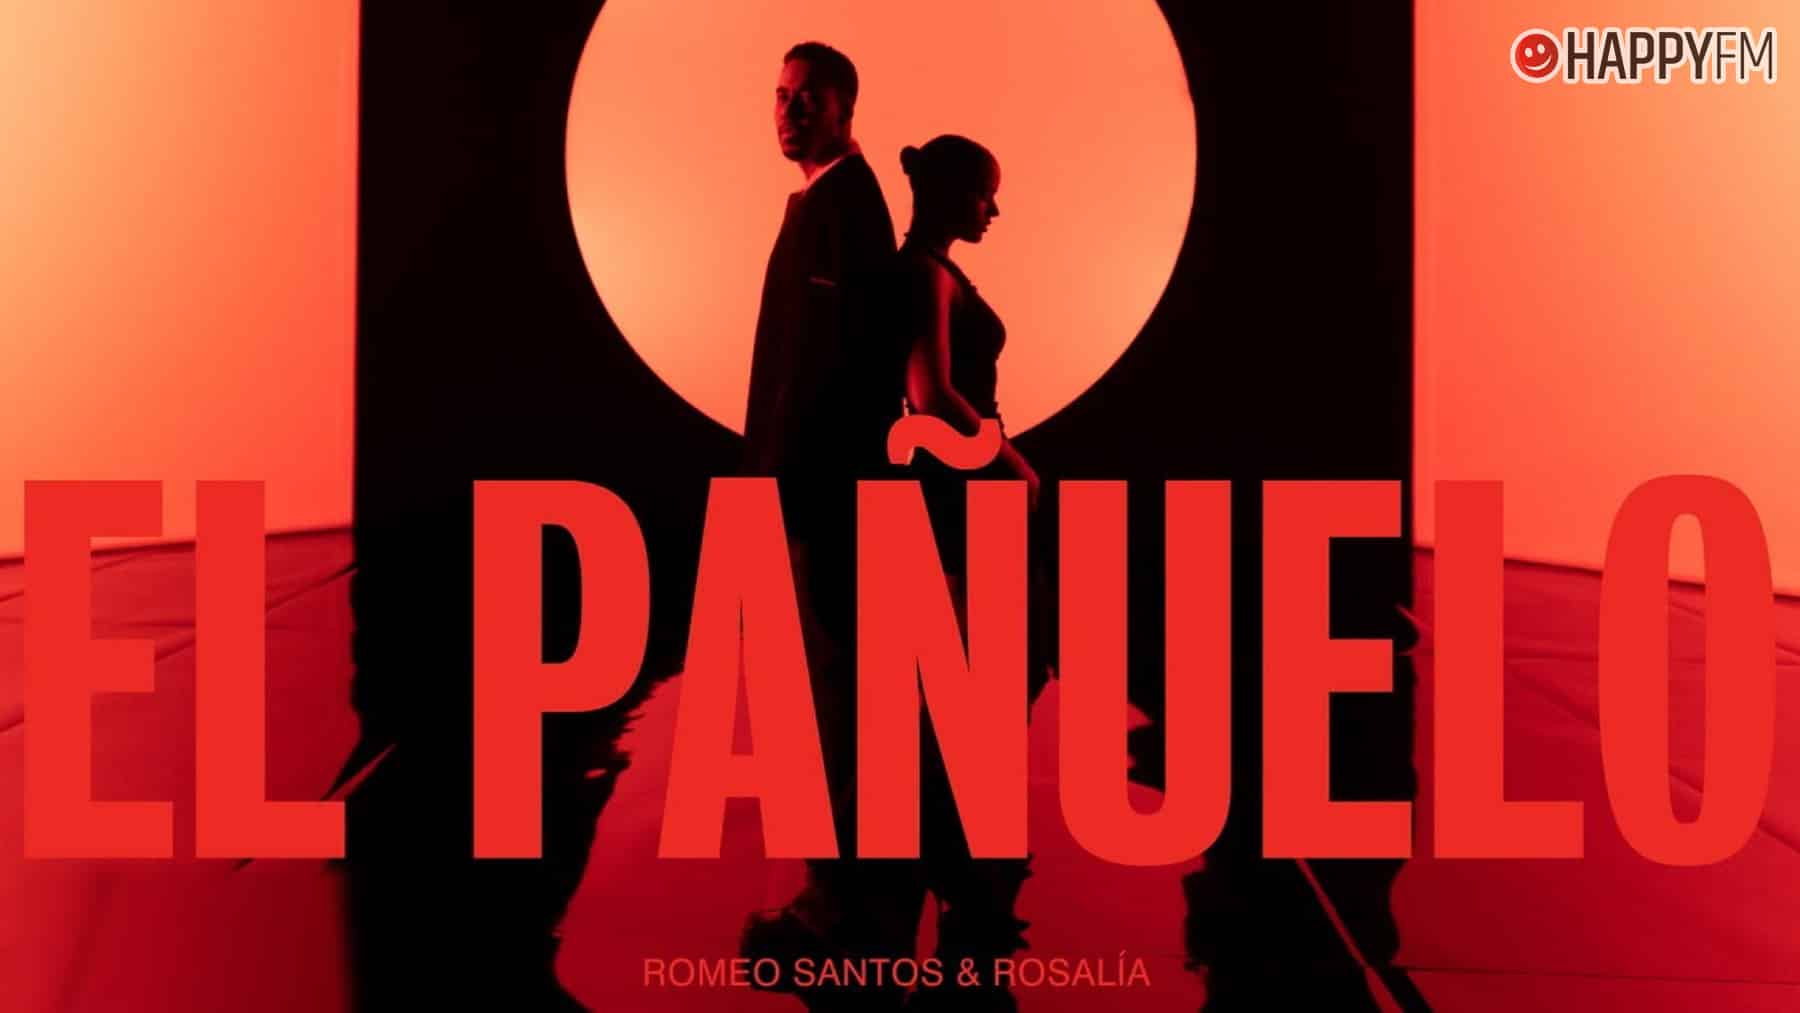 ‘El pañuelo’, de Romeo Santos y Rosalía: letra y vídeo loading=